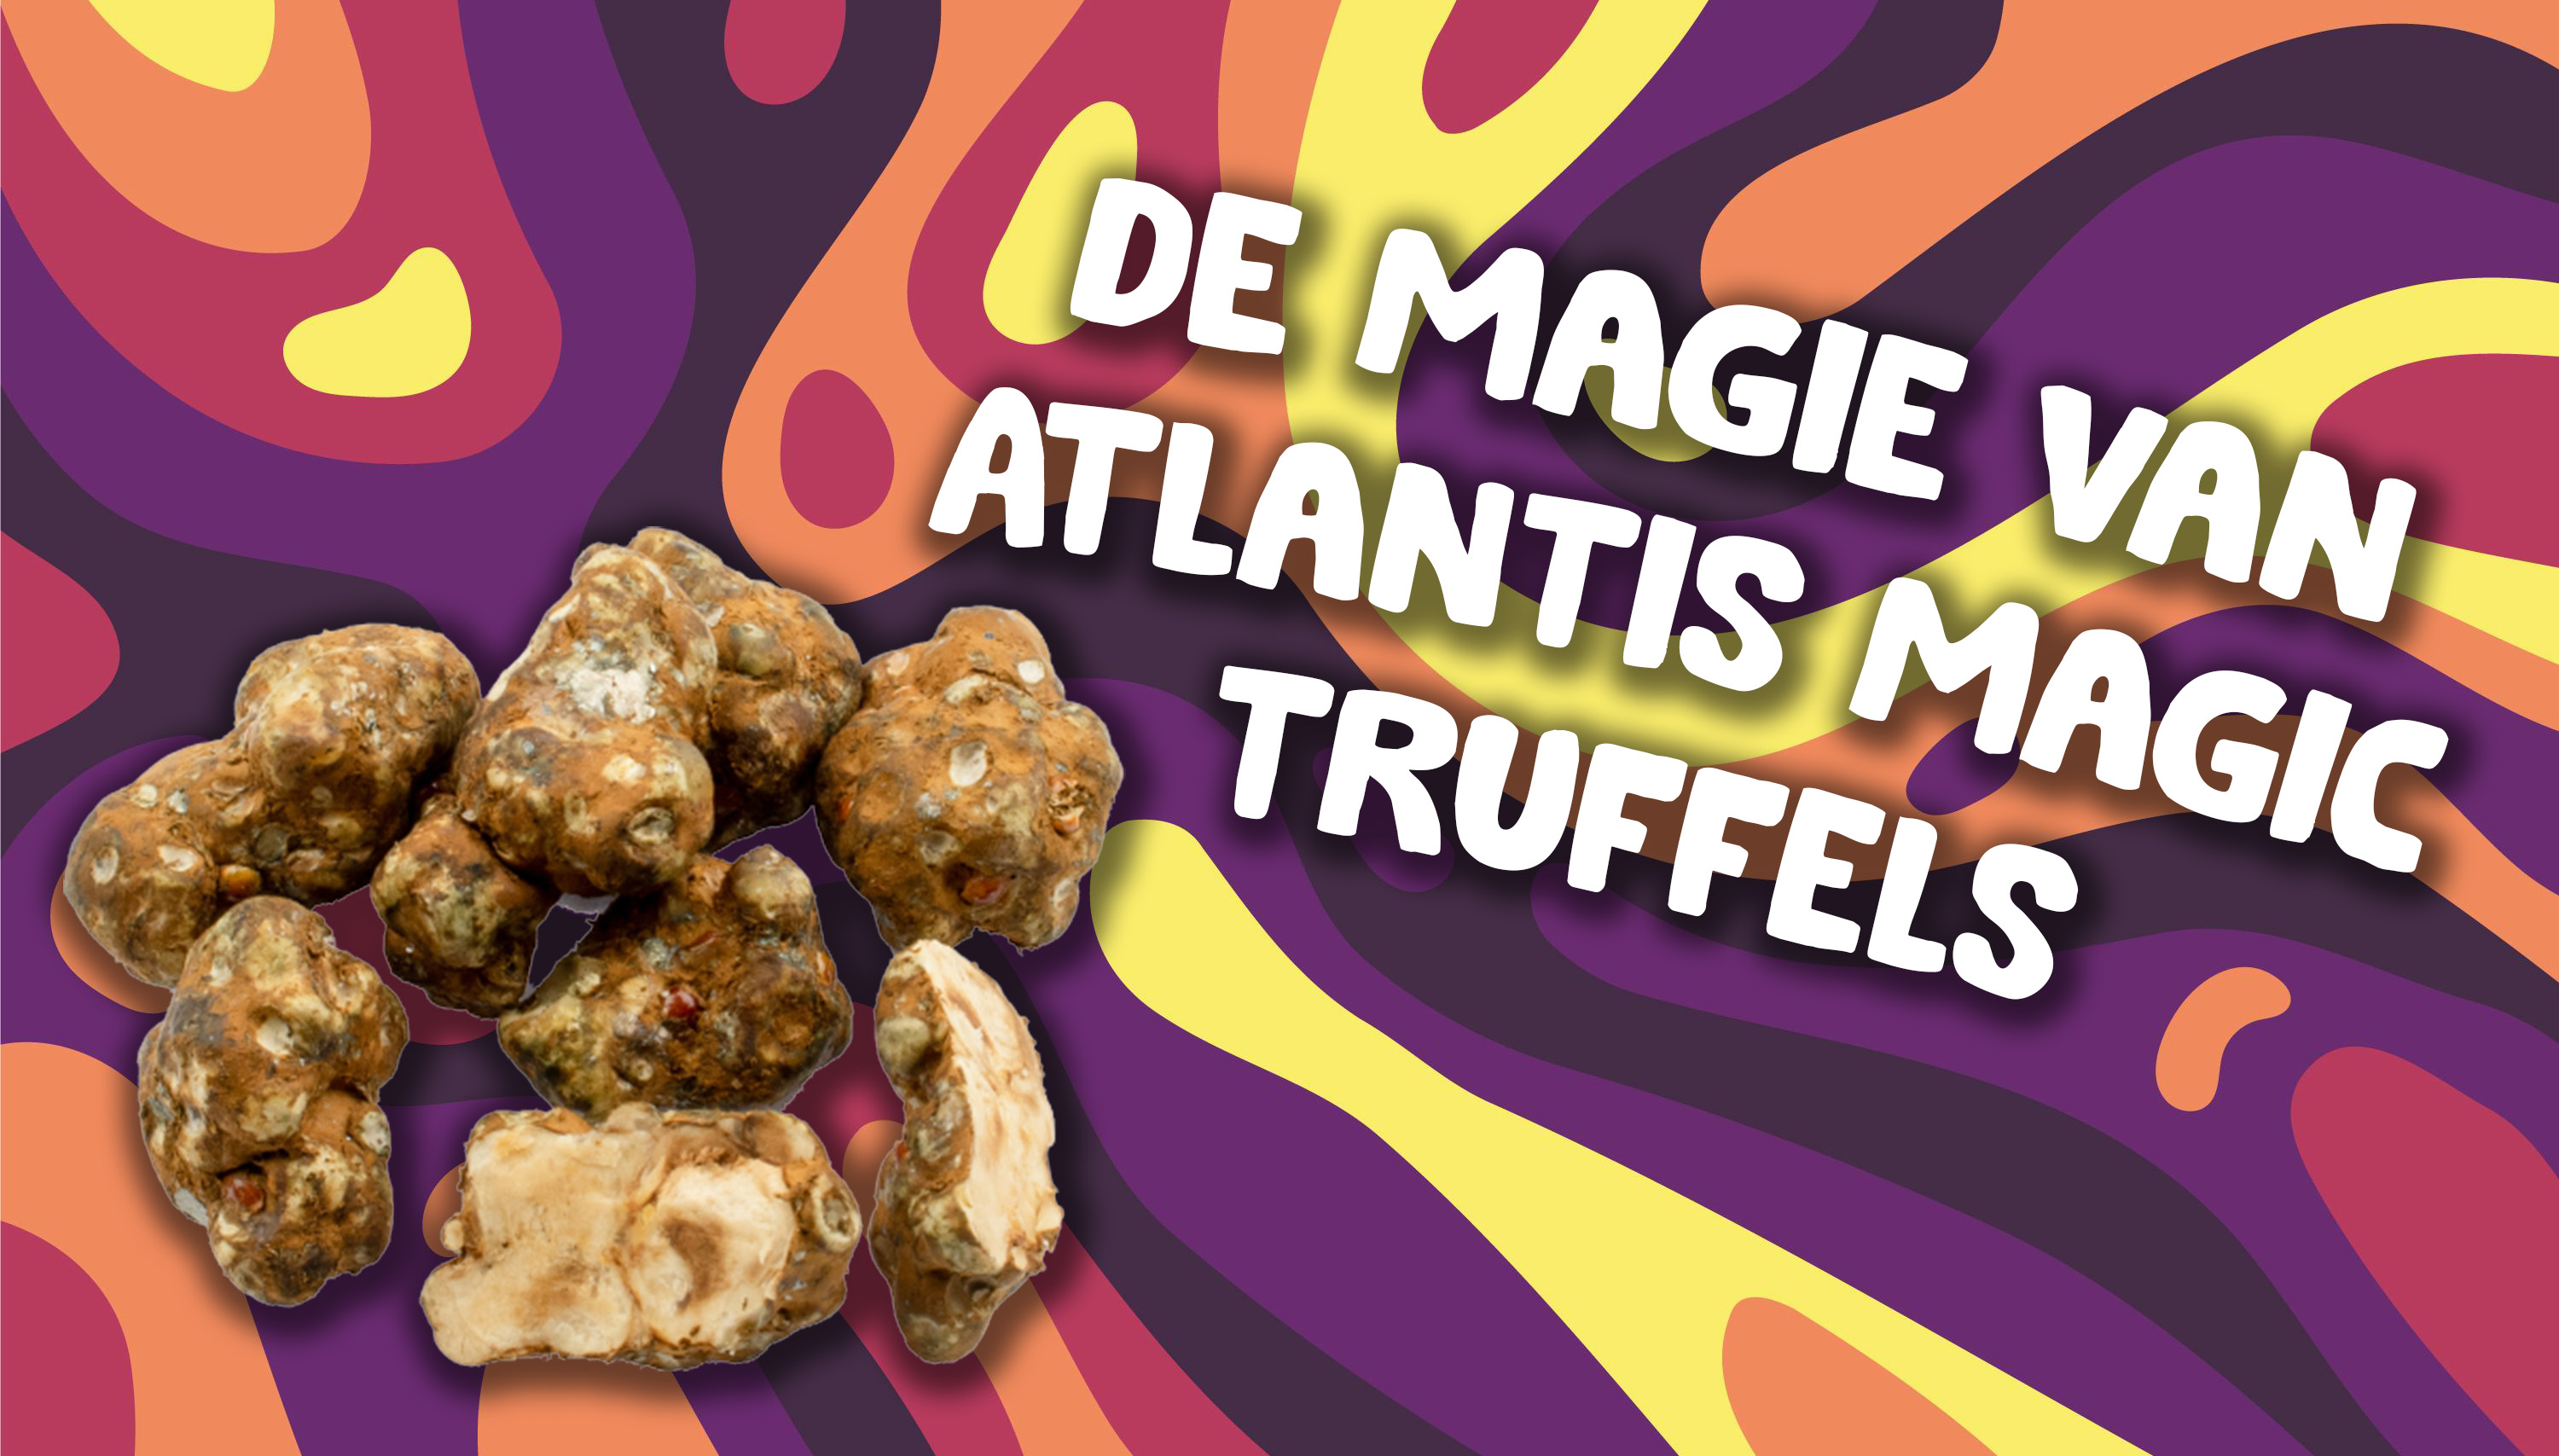 Atlantis magic truffels